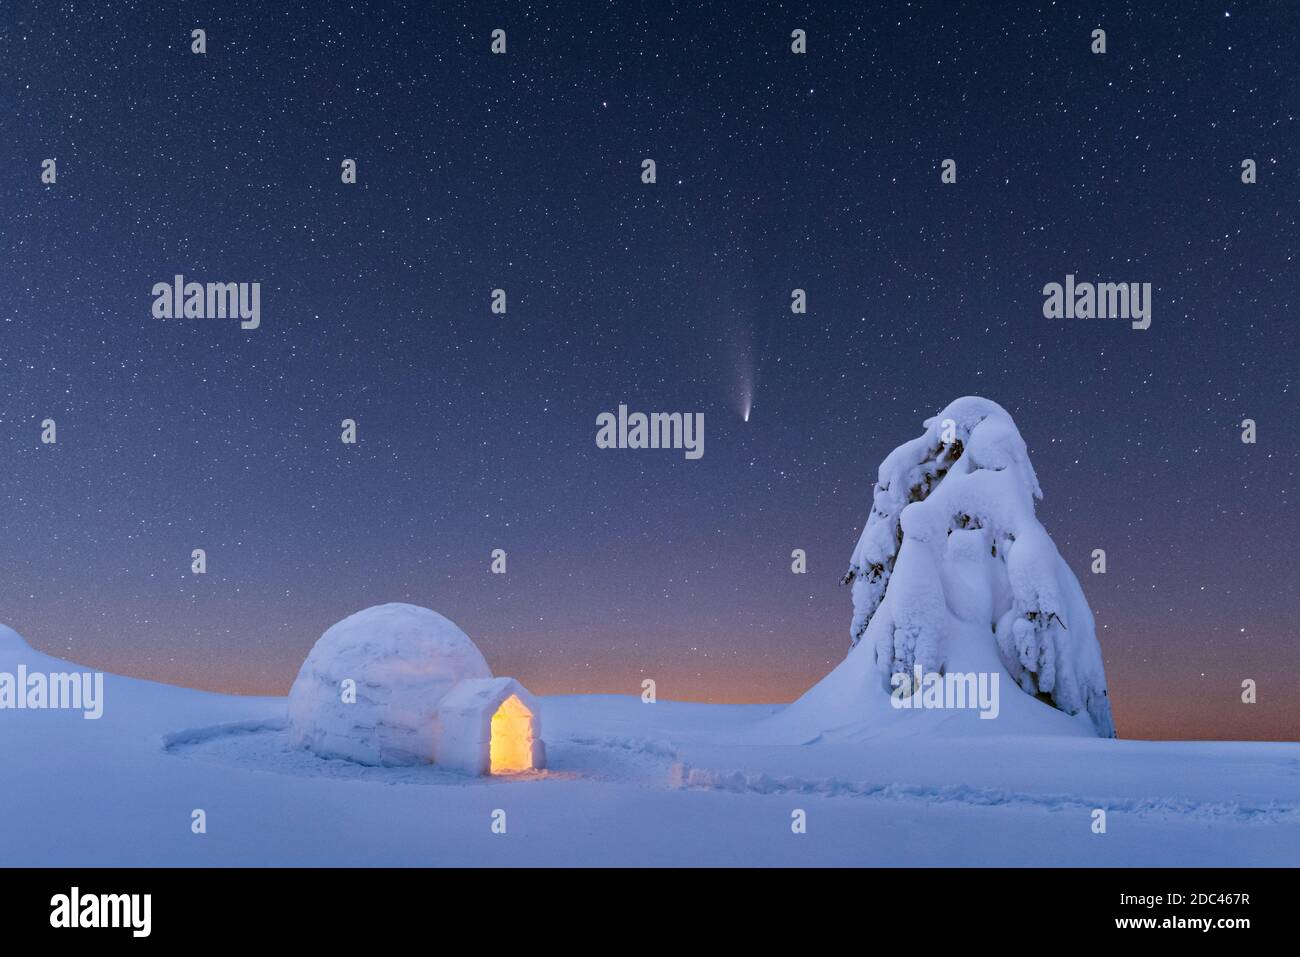 Neve igloo luminoso dall'interno nelle montagne invernali. Cielo stellato con cometa sullo sfondo Foto Stock